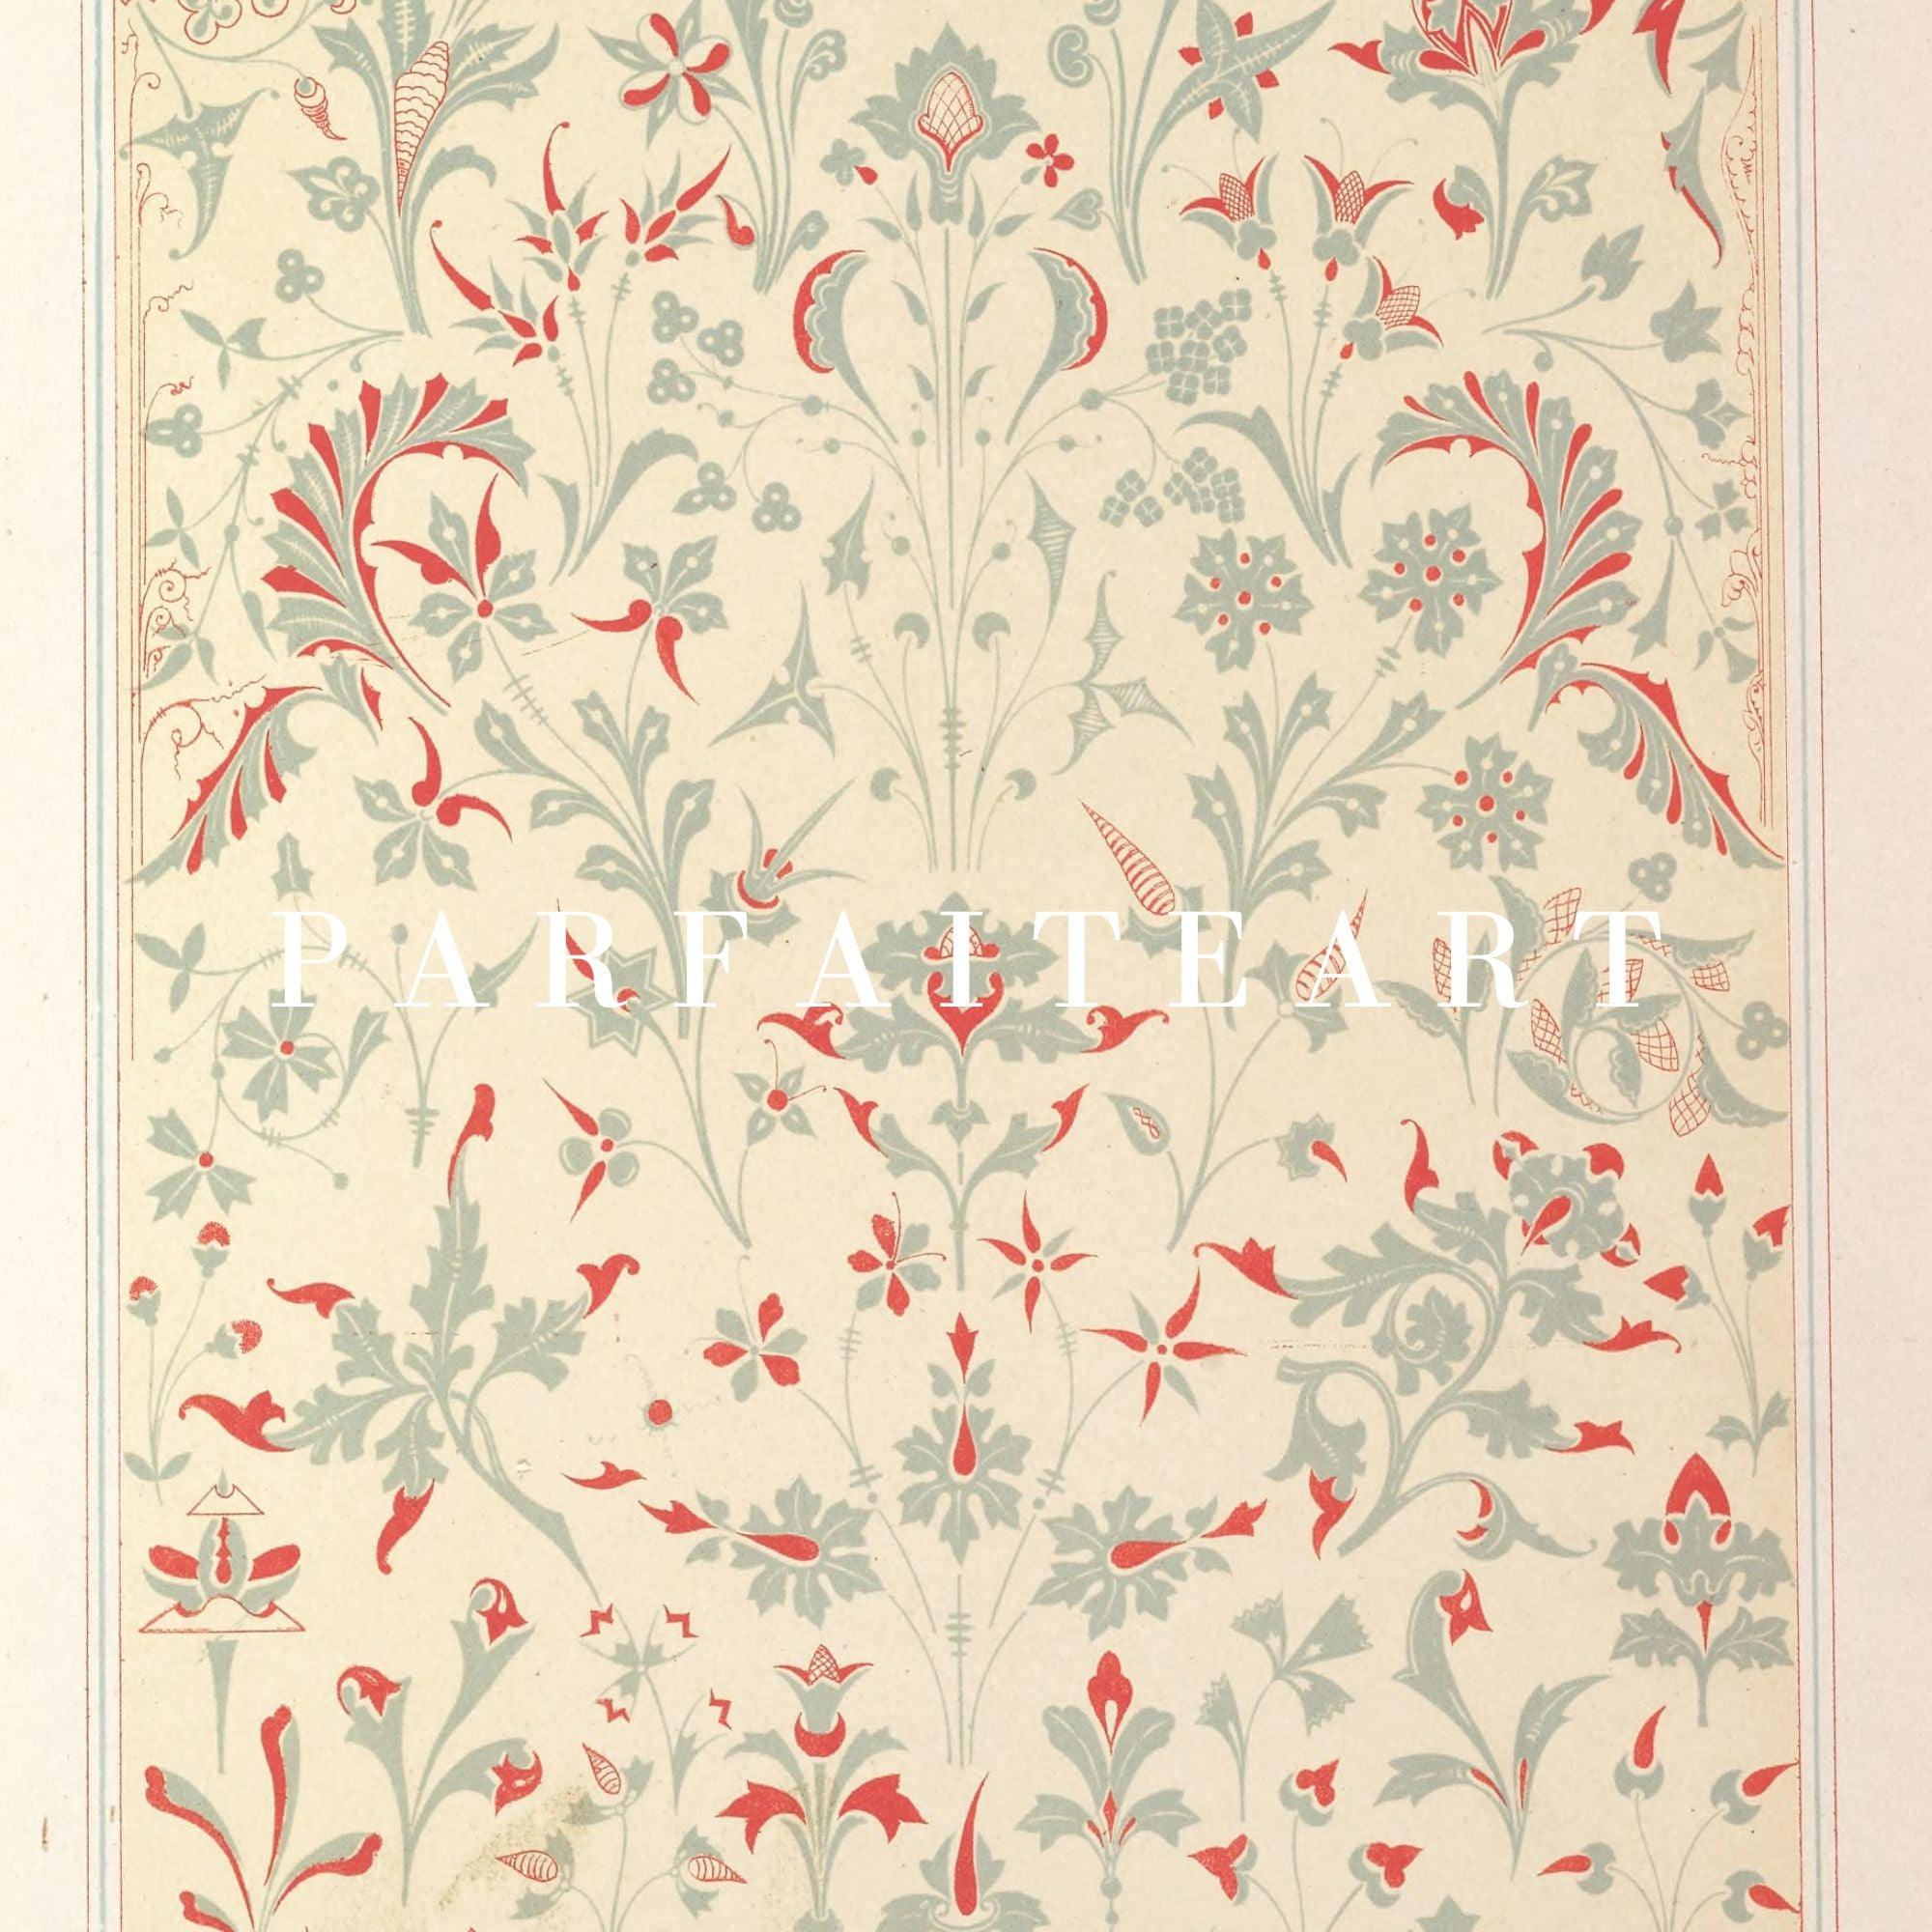 Vintage Botanical Floral Pattern - Moody Art Deco Giclée Framed Print for Living Room #33